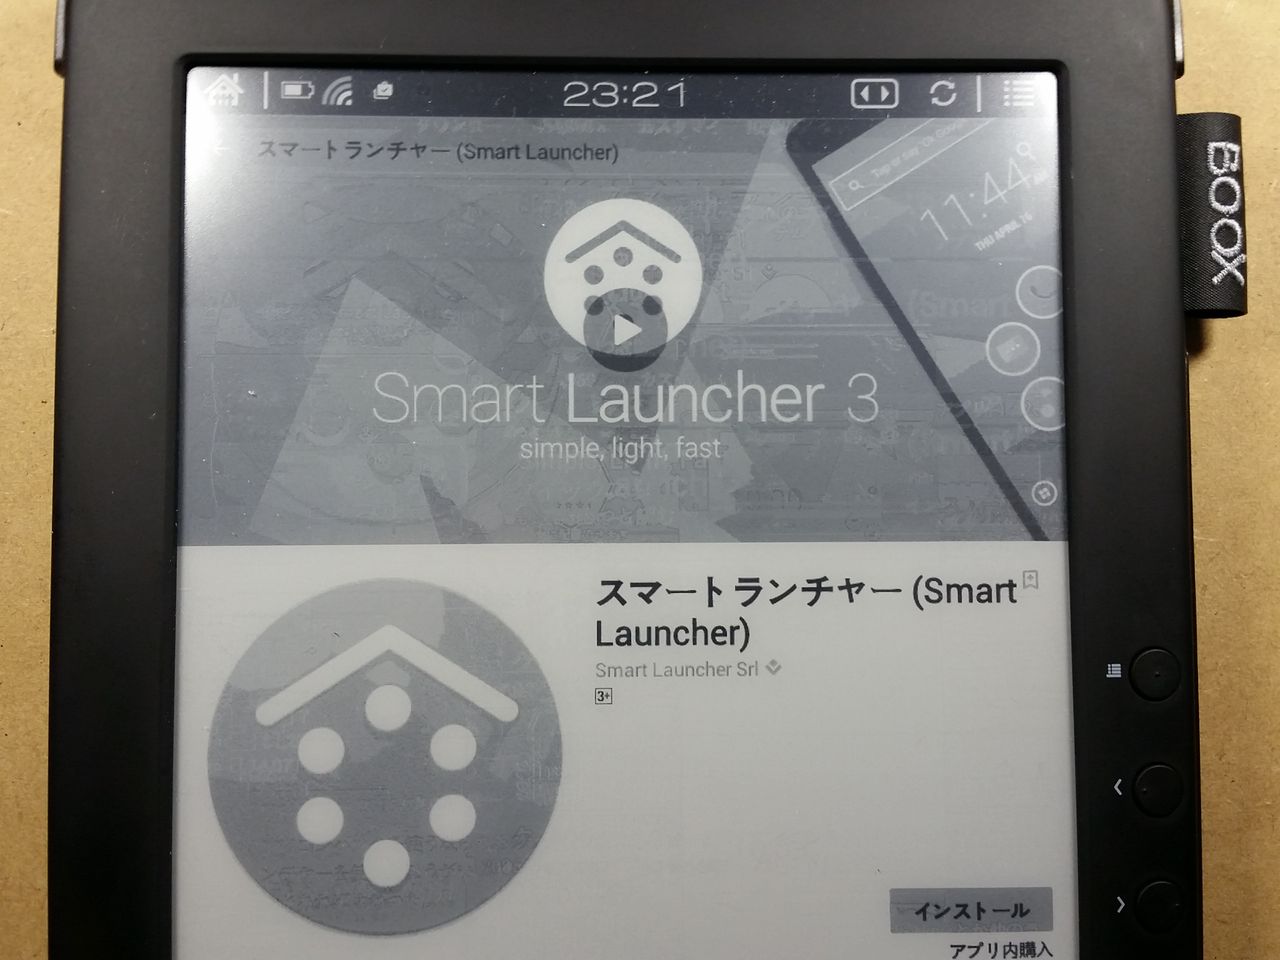 Booxシリーズでいきなりアプリの画面 Smartlauncher スマートランチャー を紹介するよ チューリップ商人のブログ